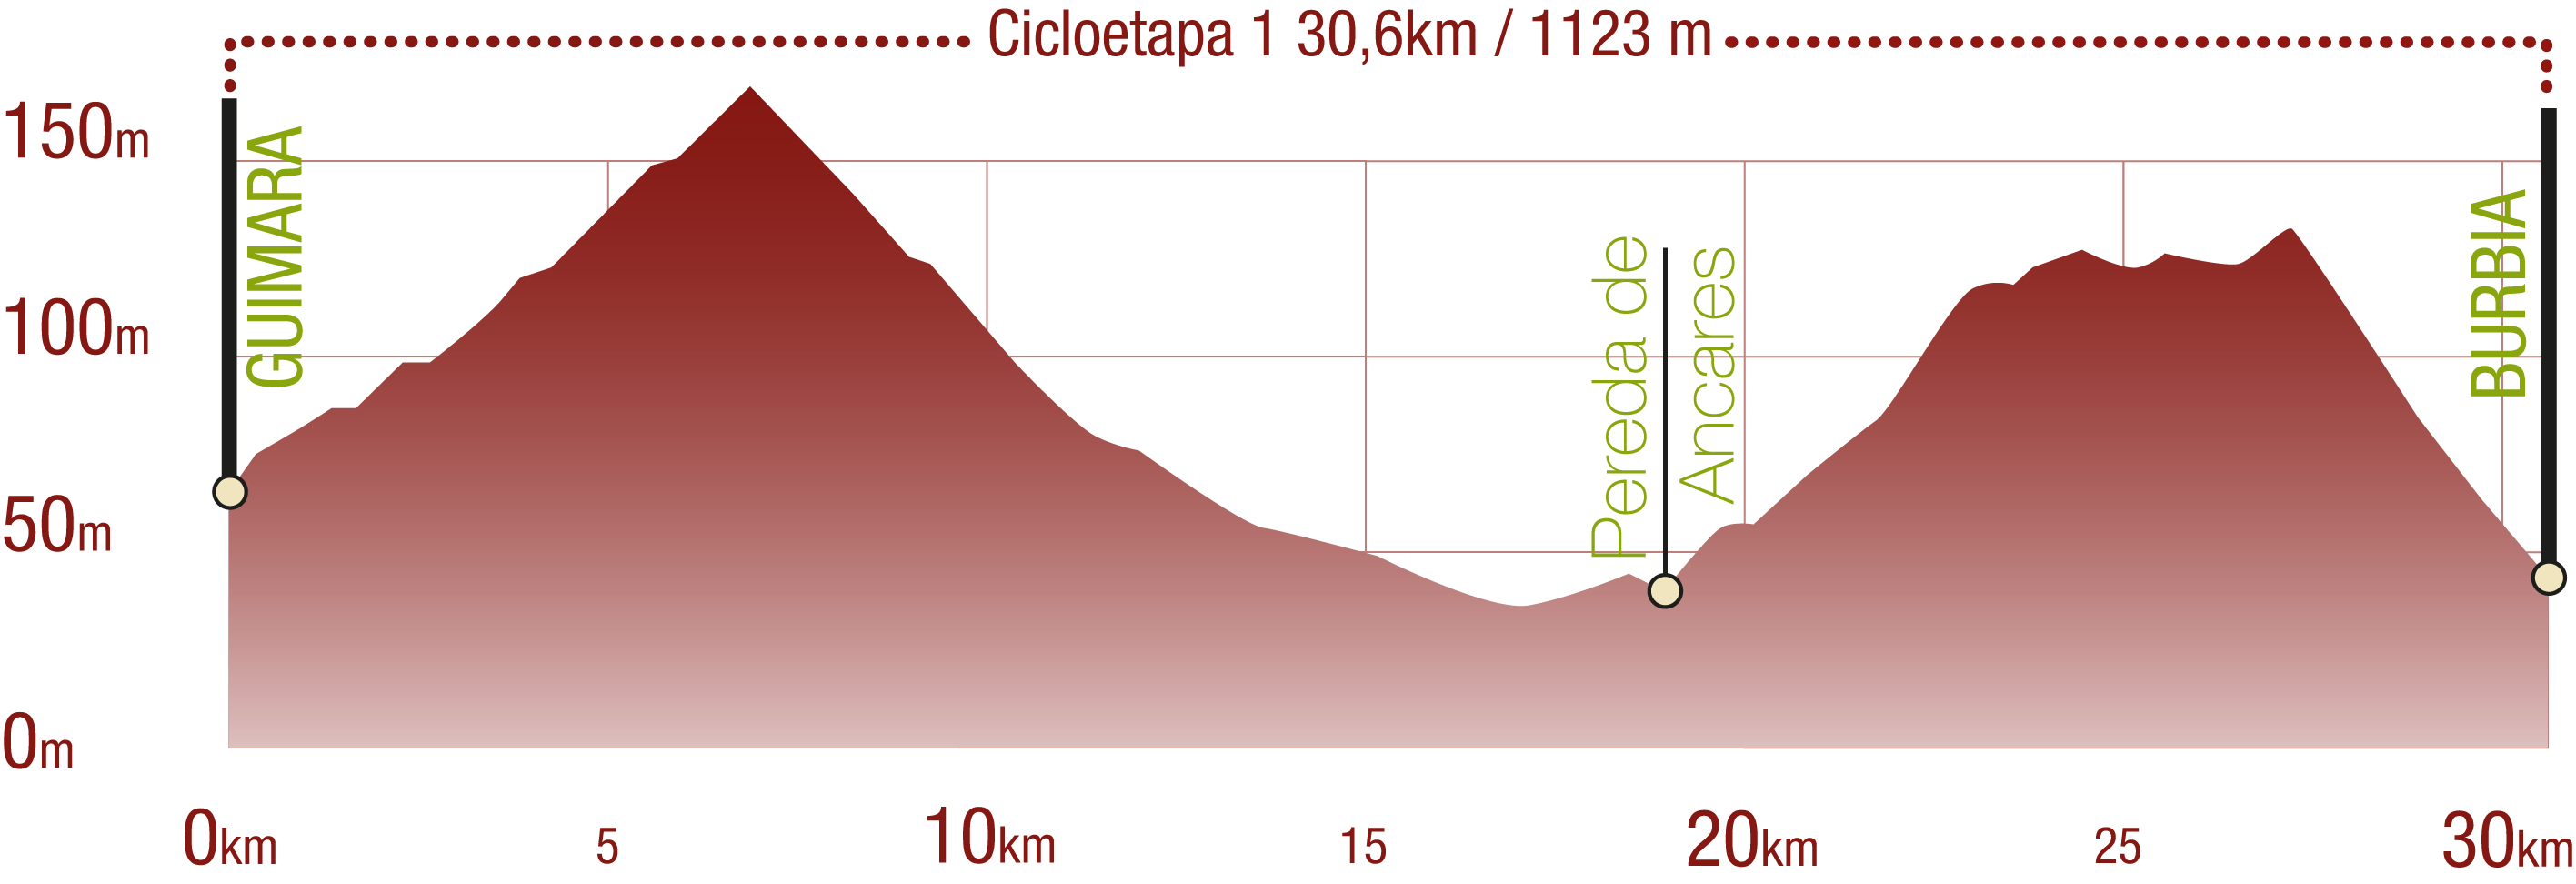 Perfil 
Perfil del recorrido de la cicloetapa 1 del CN La Mirada Circular. Ancares leoneses de Guimará a Balboa: 30,60 km / Desnivel de subida 1123 m

